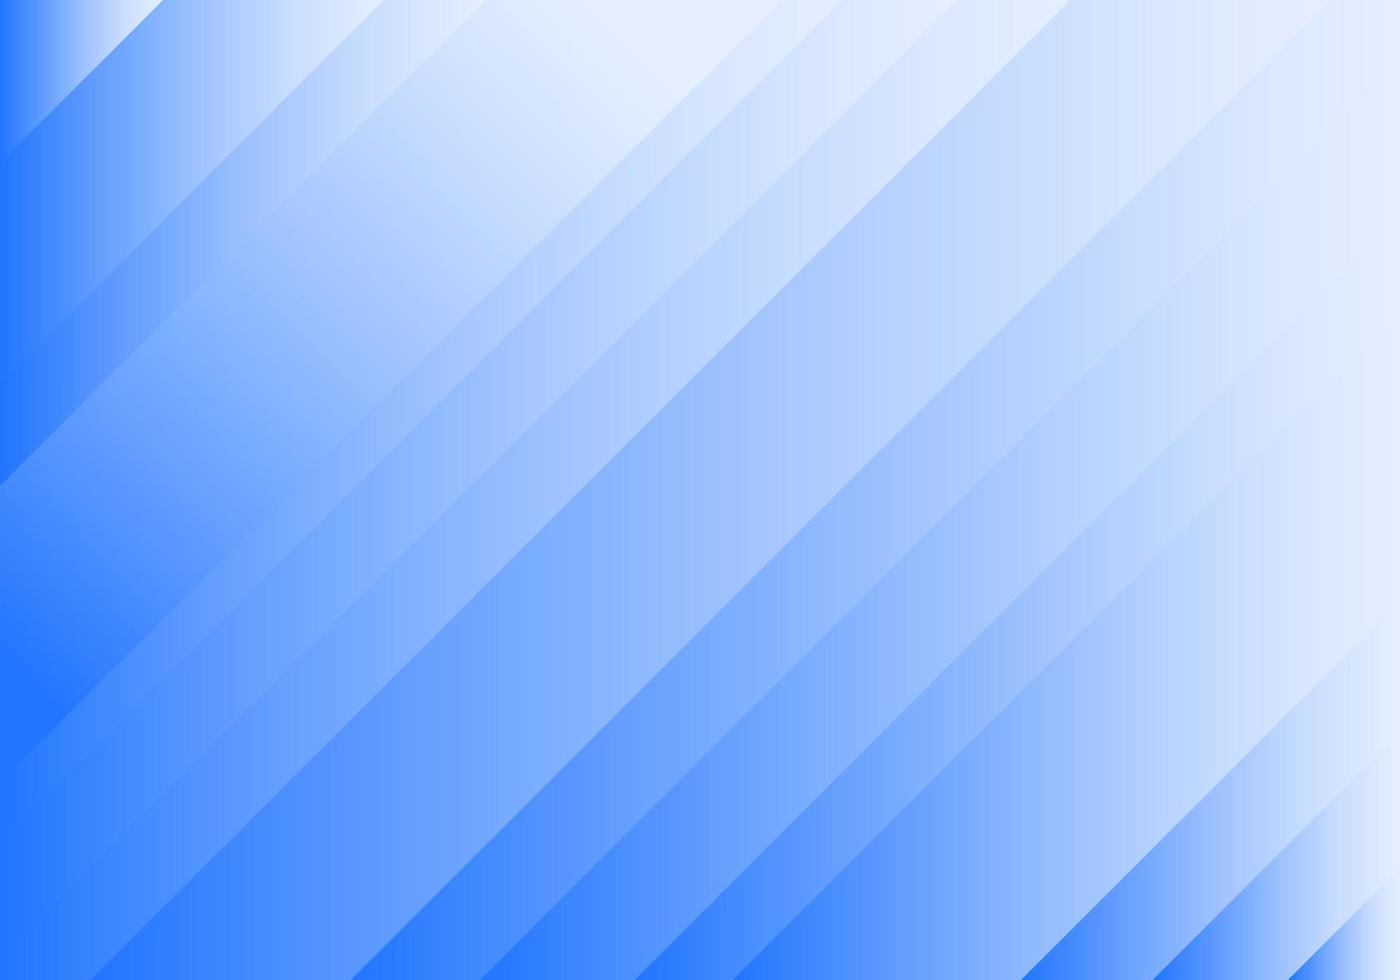 abstract achtergrond combinaties van blauw gradatie naar lijken op vouwen van papier naar elk andere in een diagonaal richting. kan worden gebruikt net zo een verscheidenheid van componenten vector